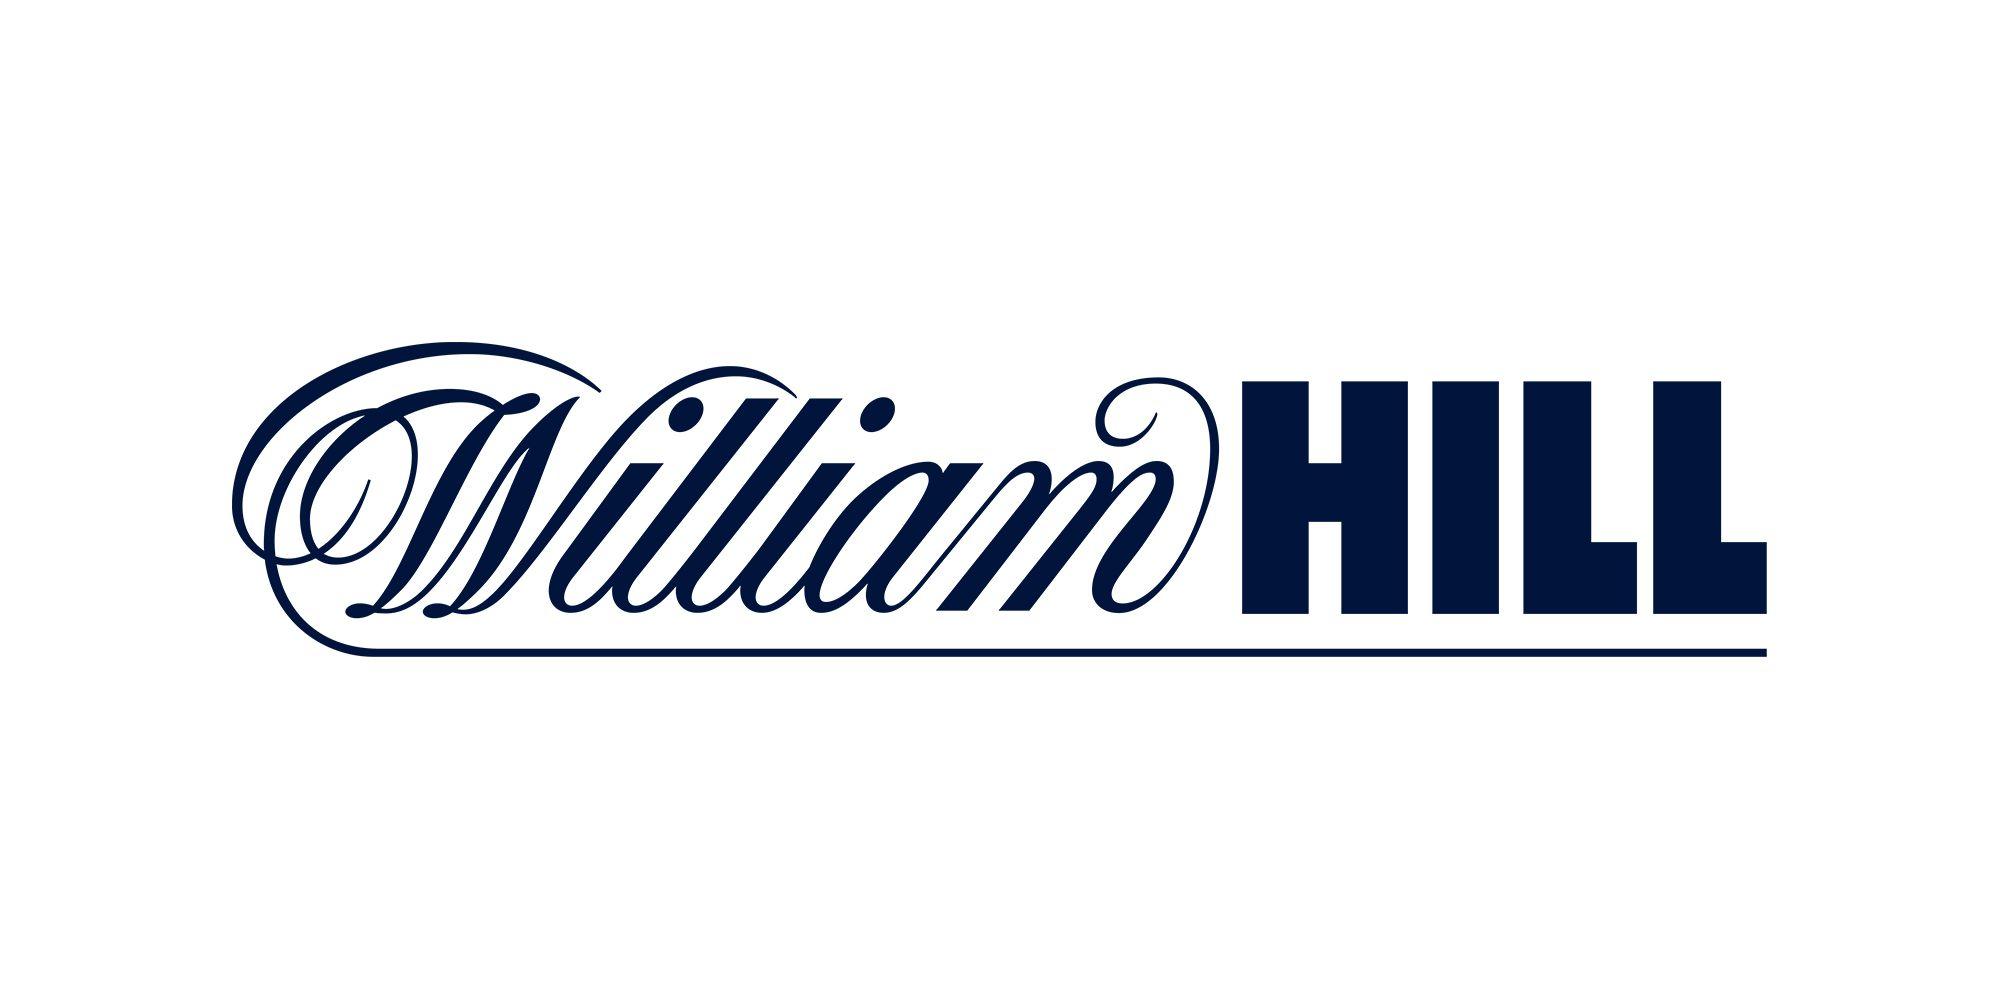 William Logo - William Hill Plc: Image library